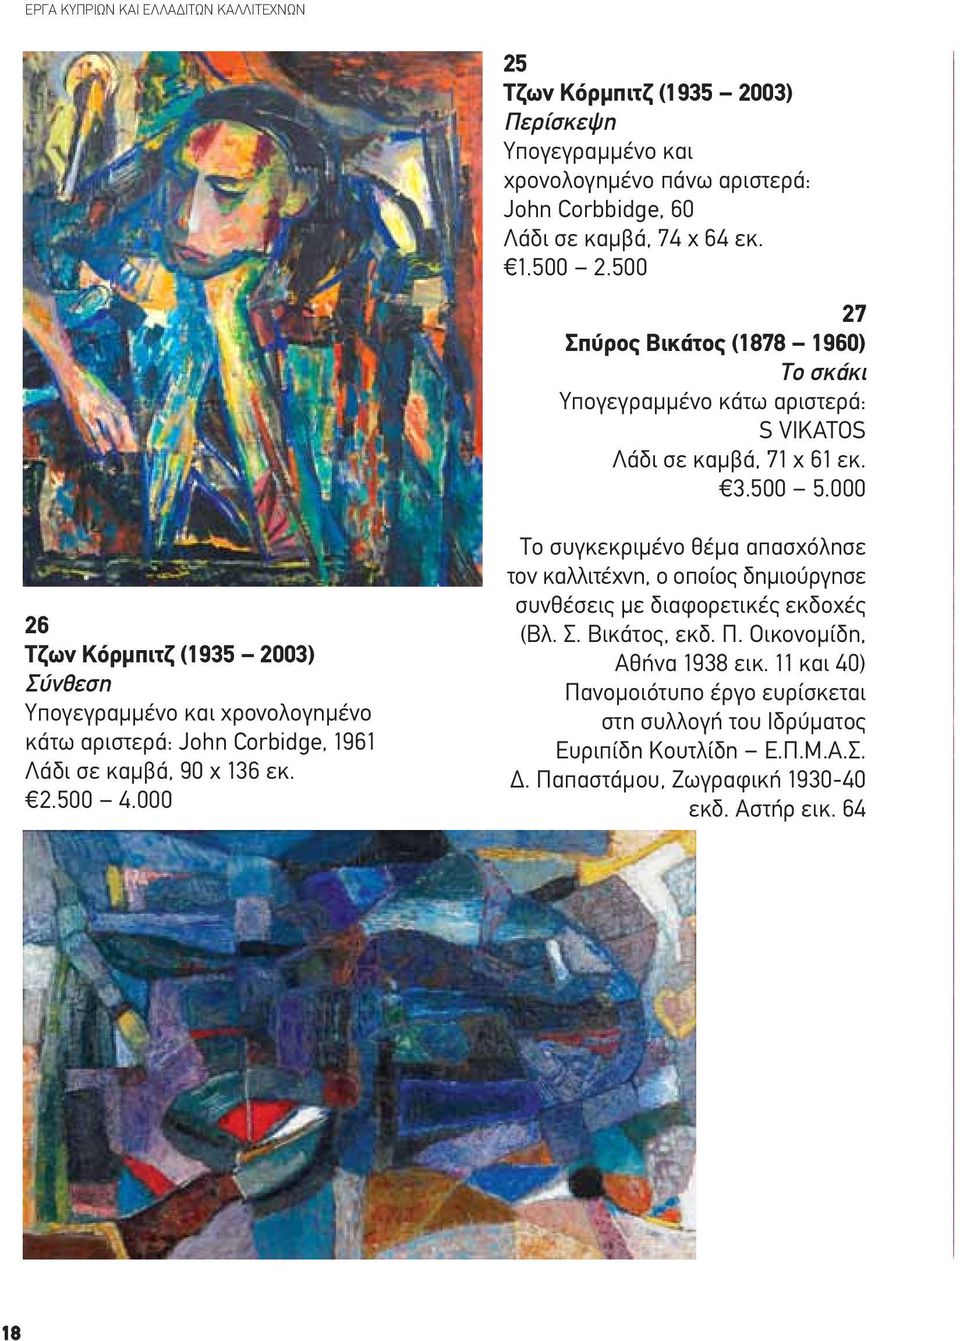 000 26 Τζων Κόρμπιτζ (1935 2003) Σύνθεση Υπογεγραμμένο και χρονολογημένο κάτω αριστερά: John Corbidge, 1961 Λάδι σε καμβά, 90 x 136 εκ. 2.500 4.